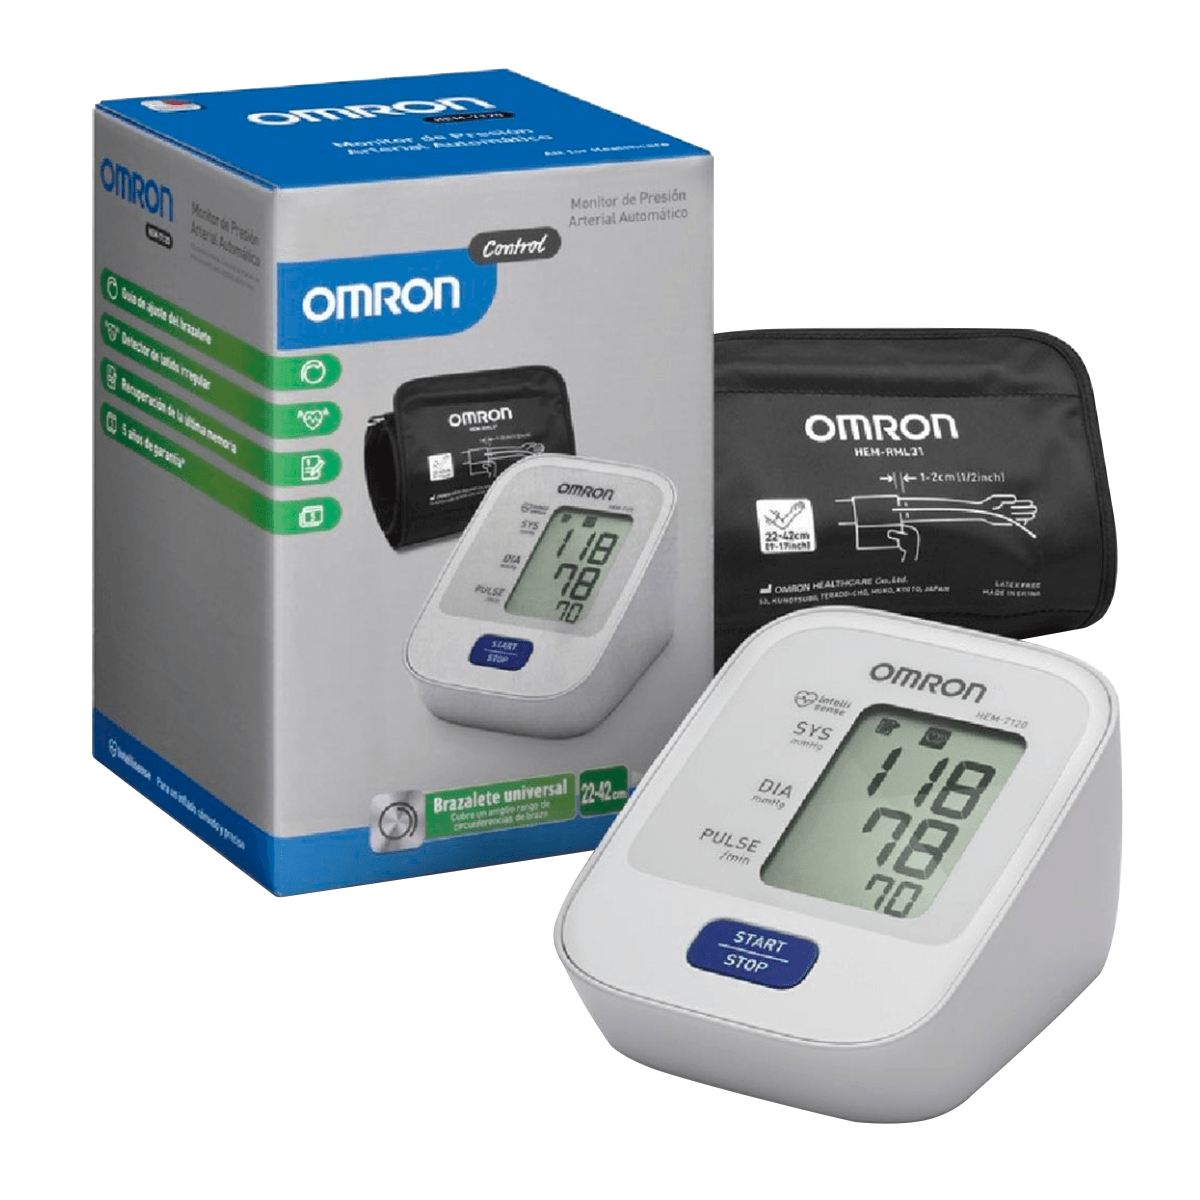 Meykos - El medidor de presión arterial Omron América